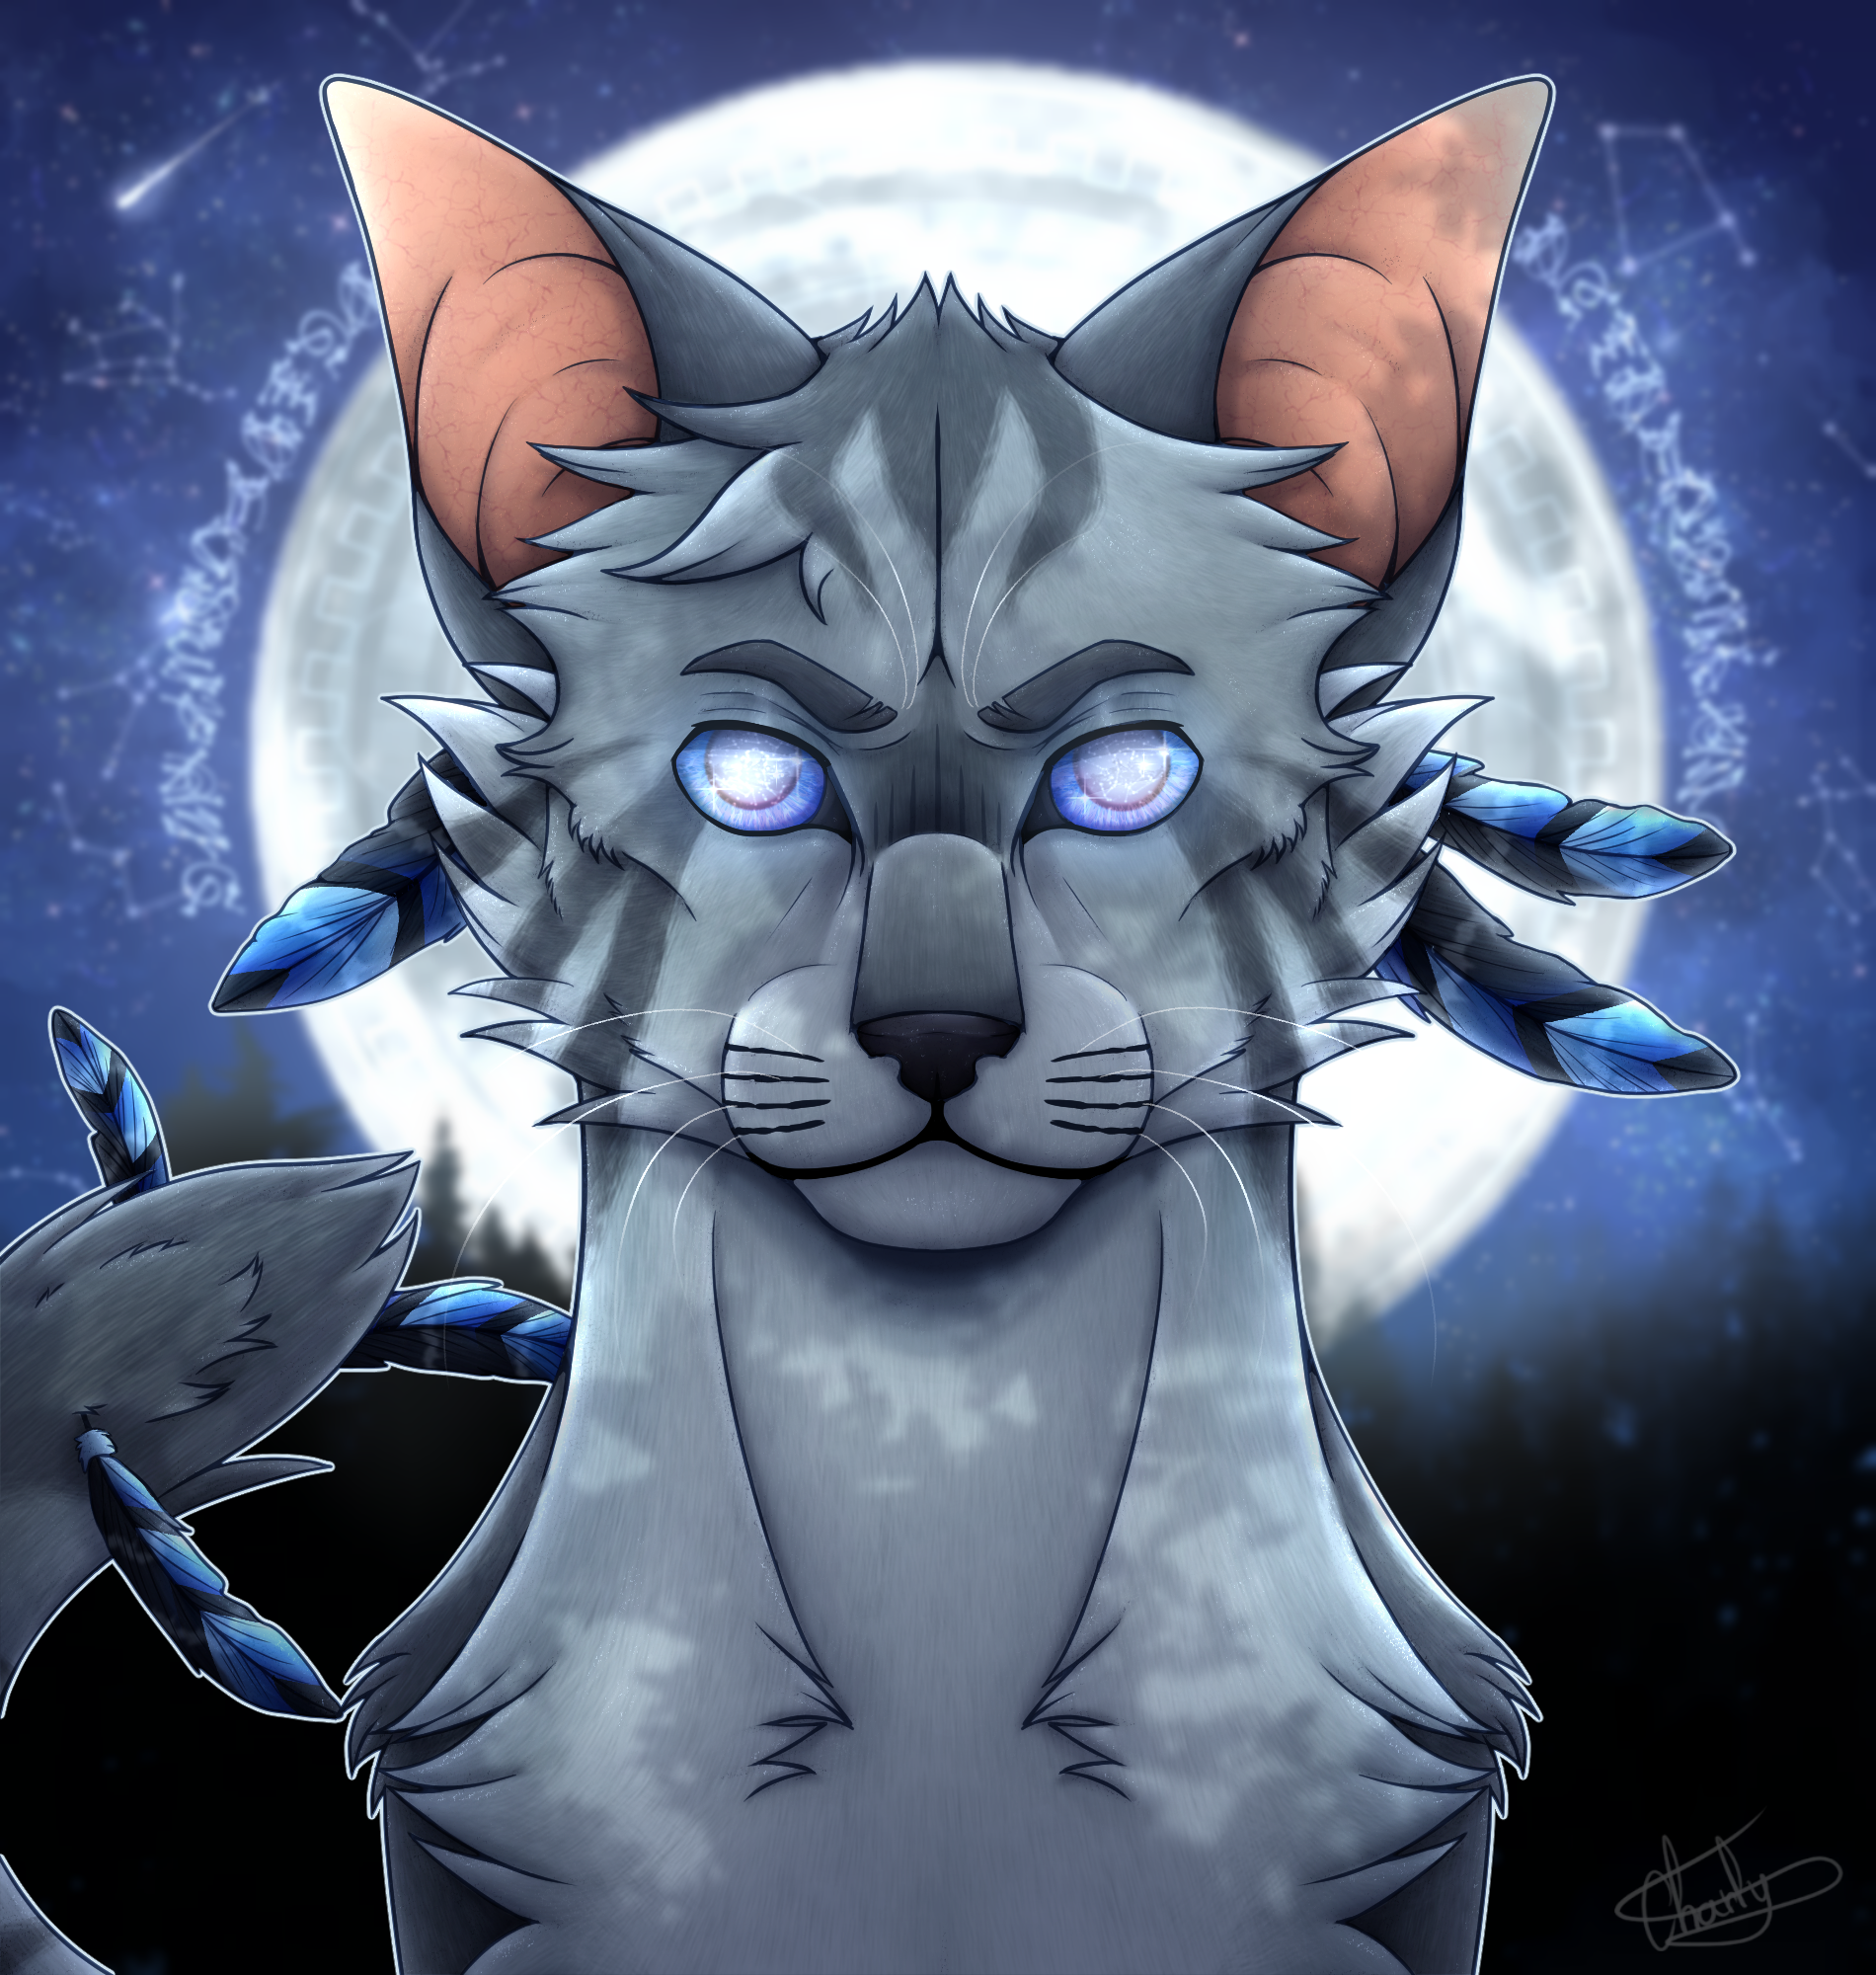 Jayfeather-warrior-cat- by xoxeaglexox on DeviantArt